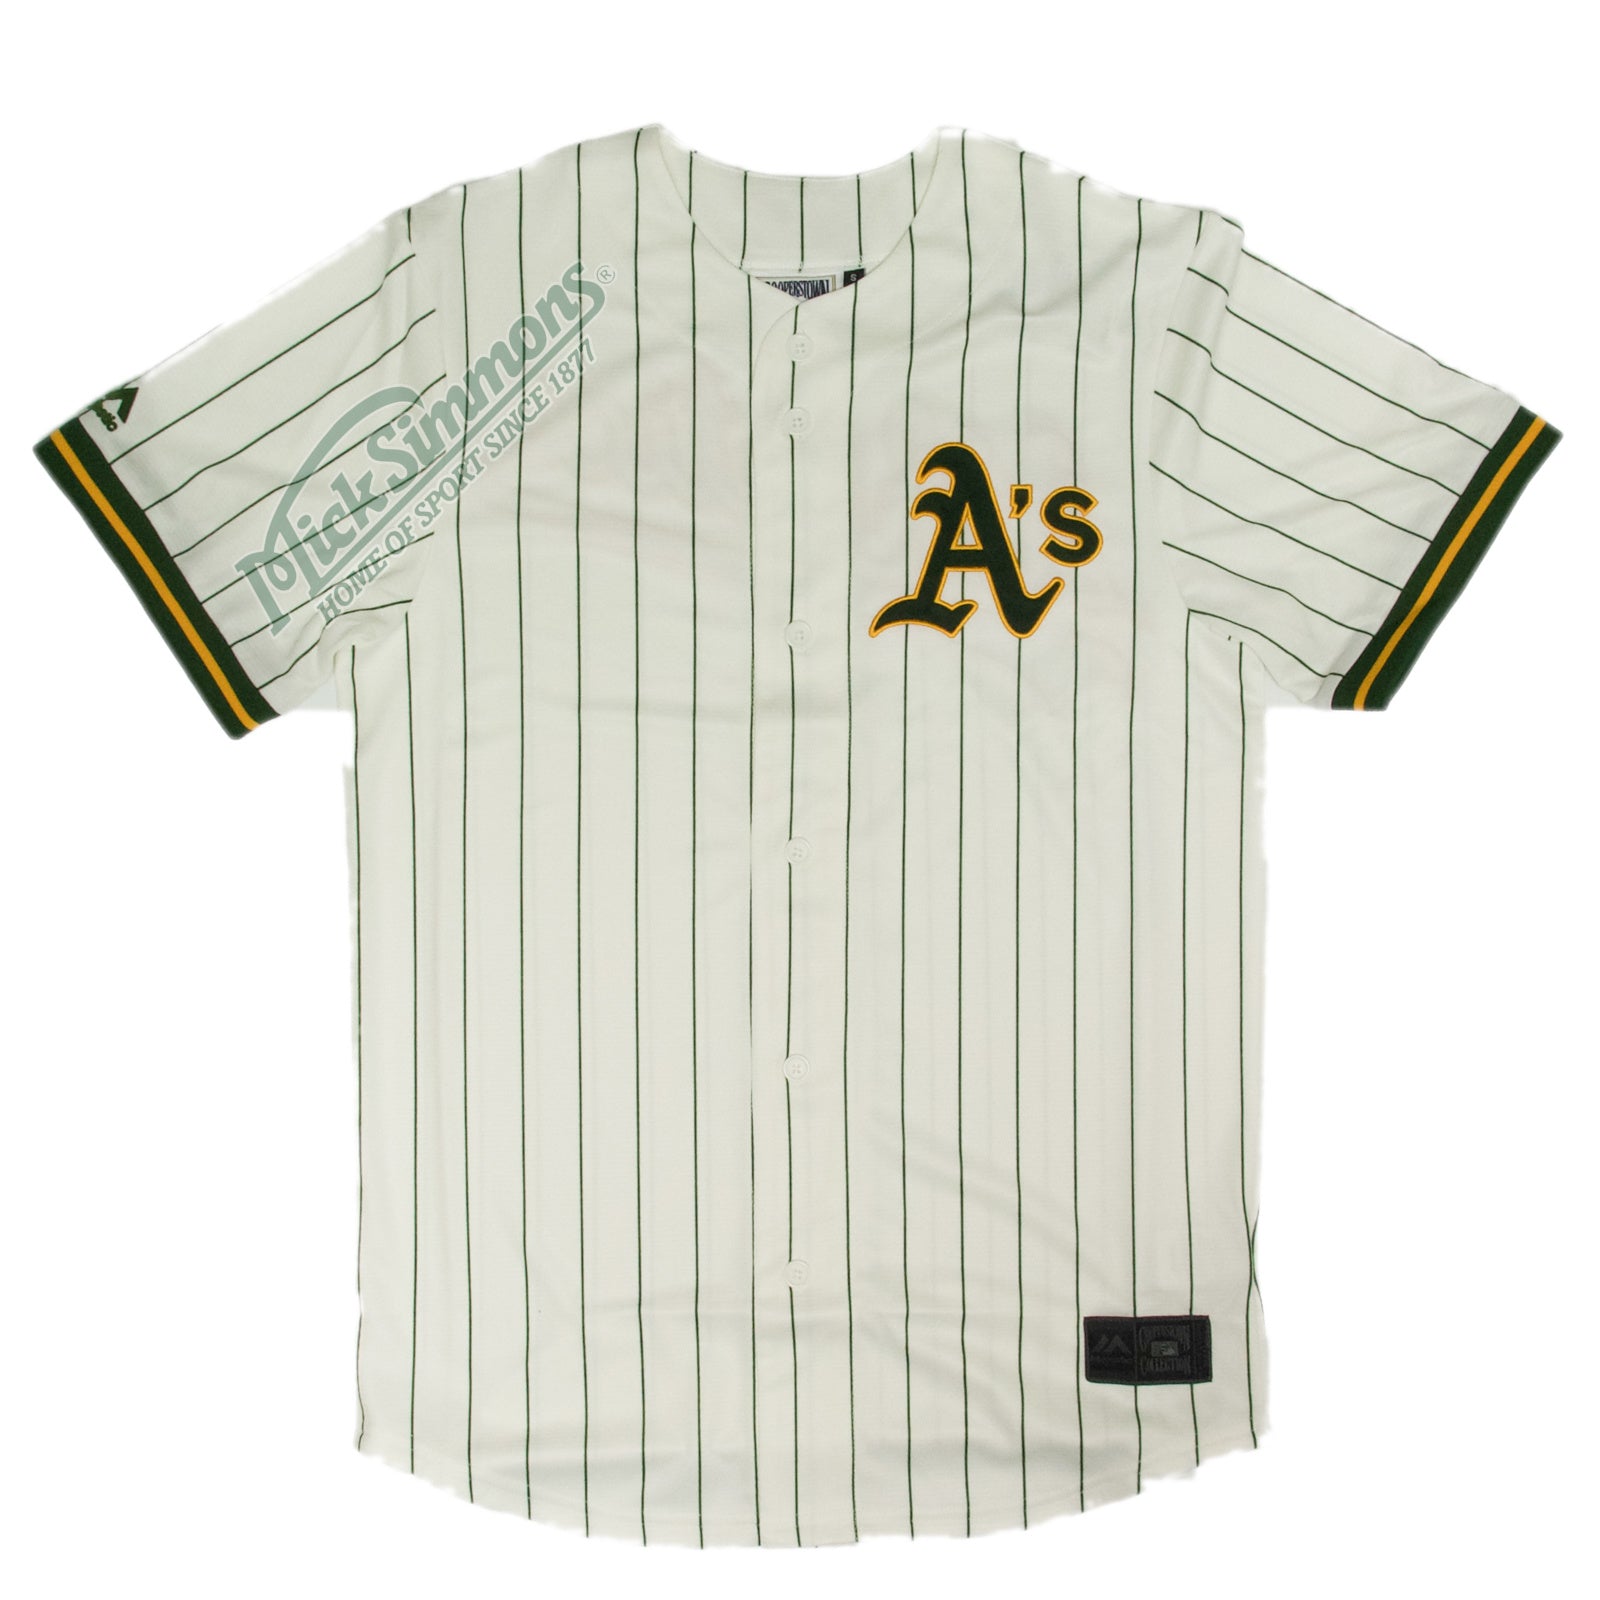 Oakland Athletics Pinstripe MLB Baseball Jersey by Majestic